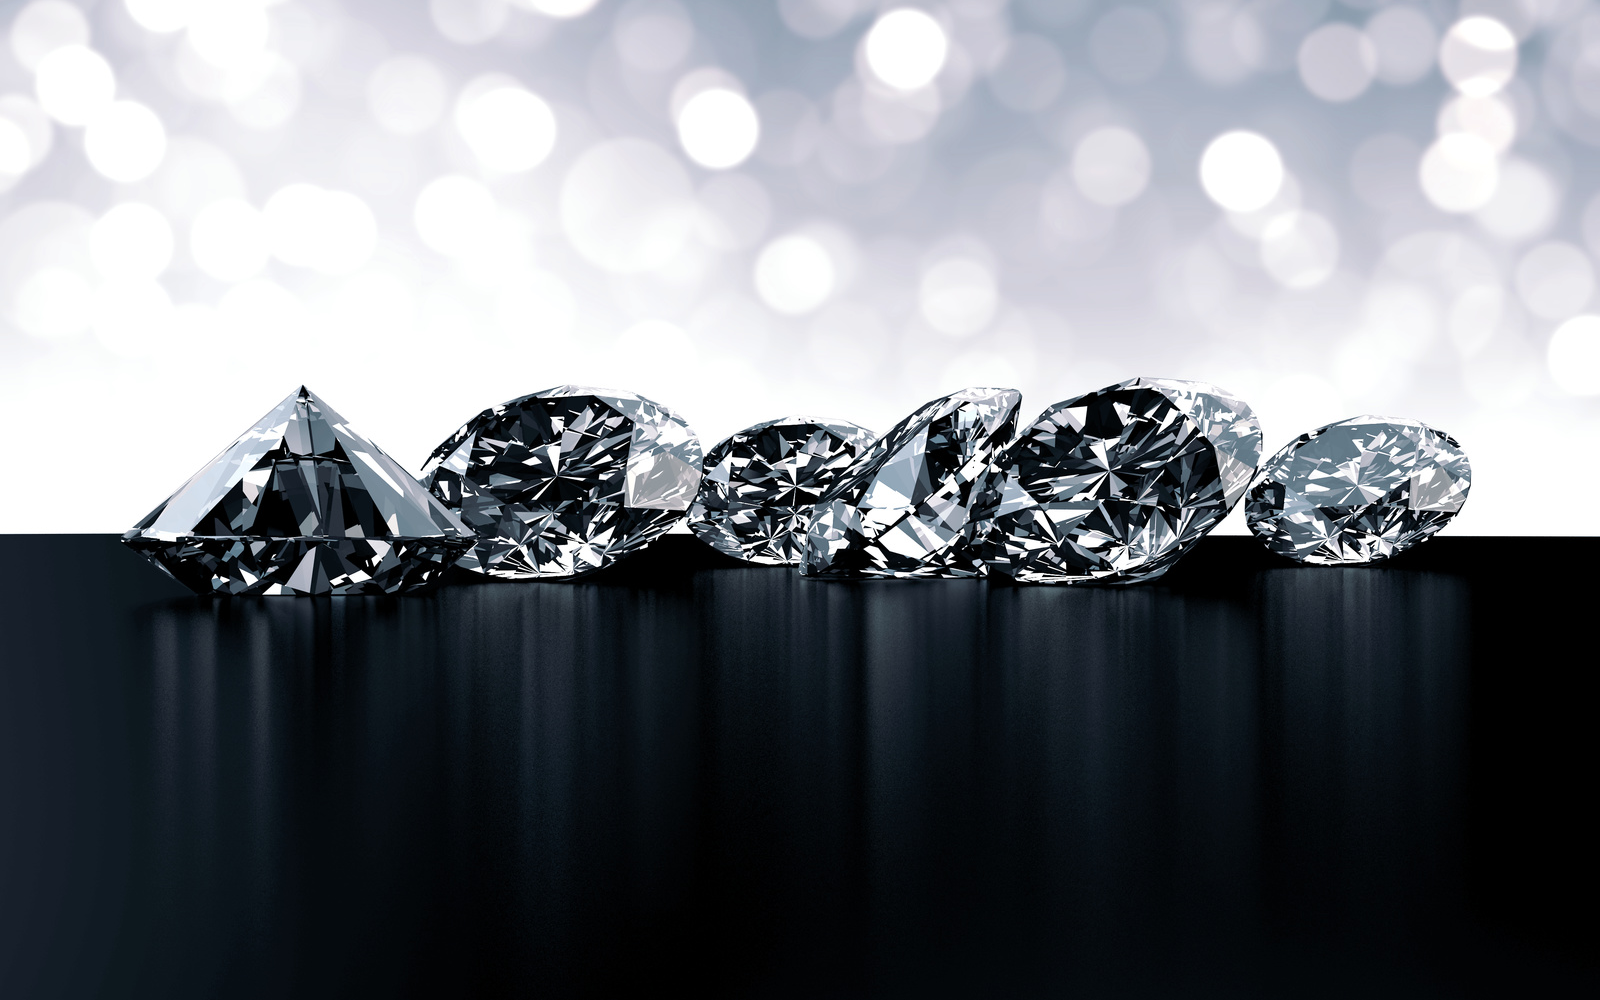 JohnstonJewelers cung cấp các hạng mục cắt kim cương khác nhau để đáp ứng nhu cầu của khách hàng. Điều này đồng nghĩa với việc chúng tôi cam kết mang đến sản phẩm tuyệt vời nhất cho khách hàng của mình. 